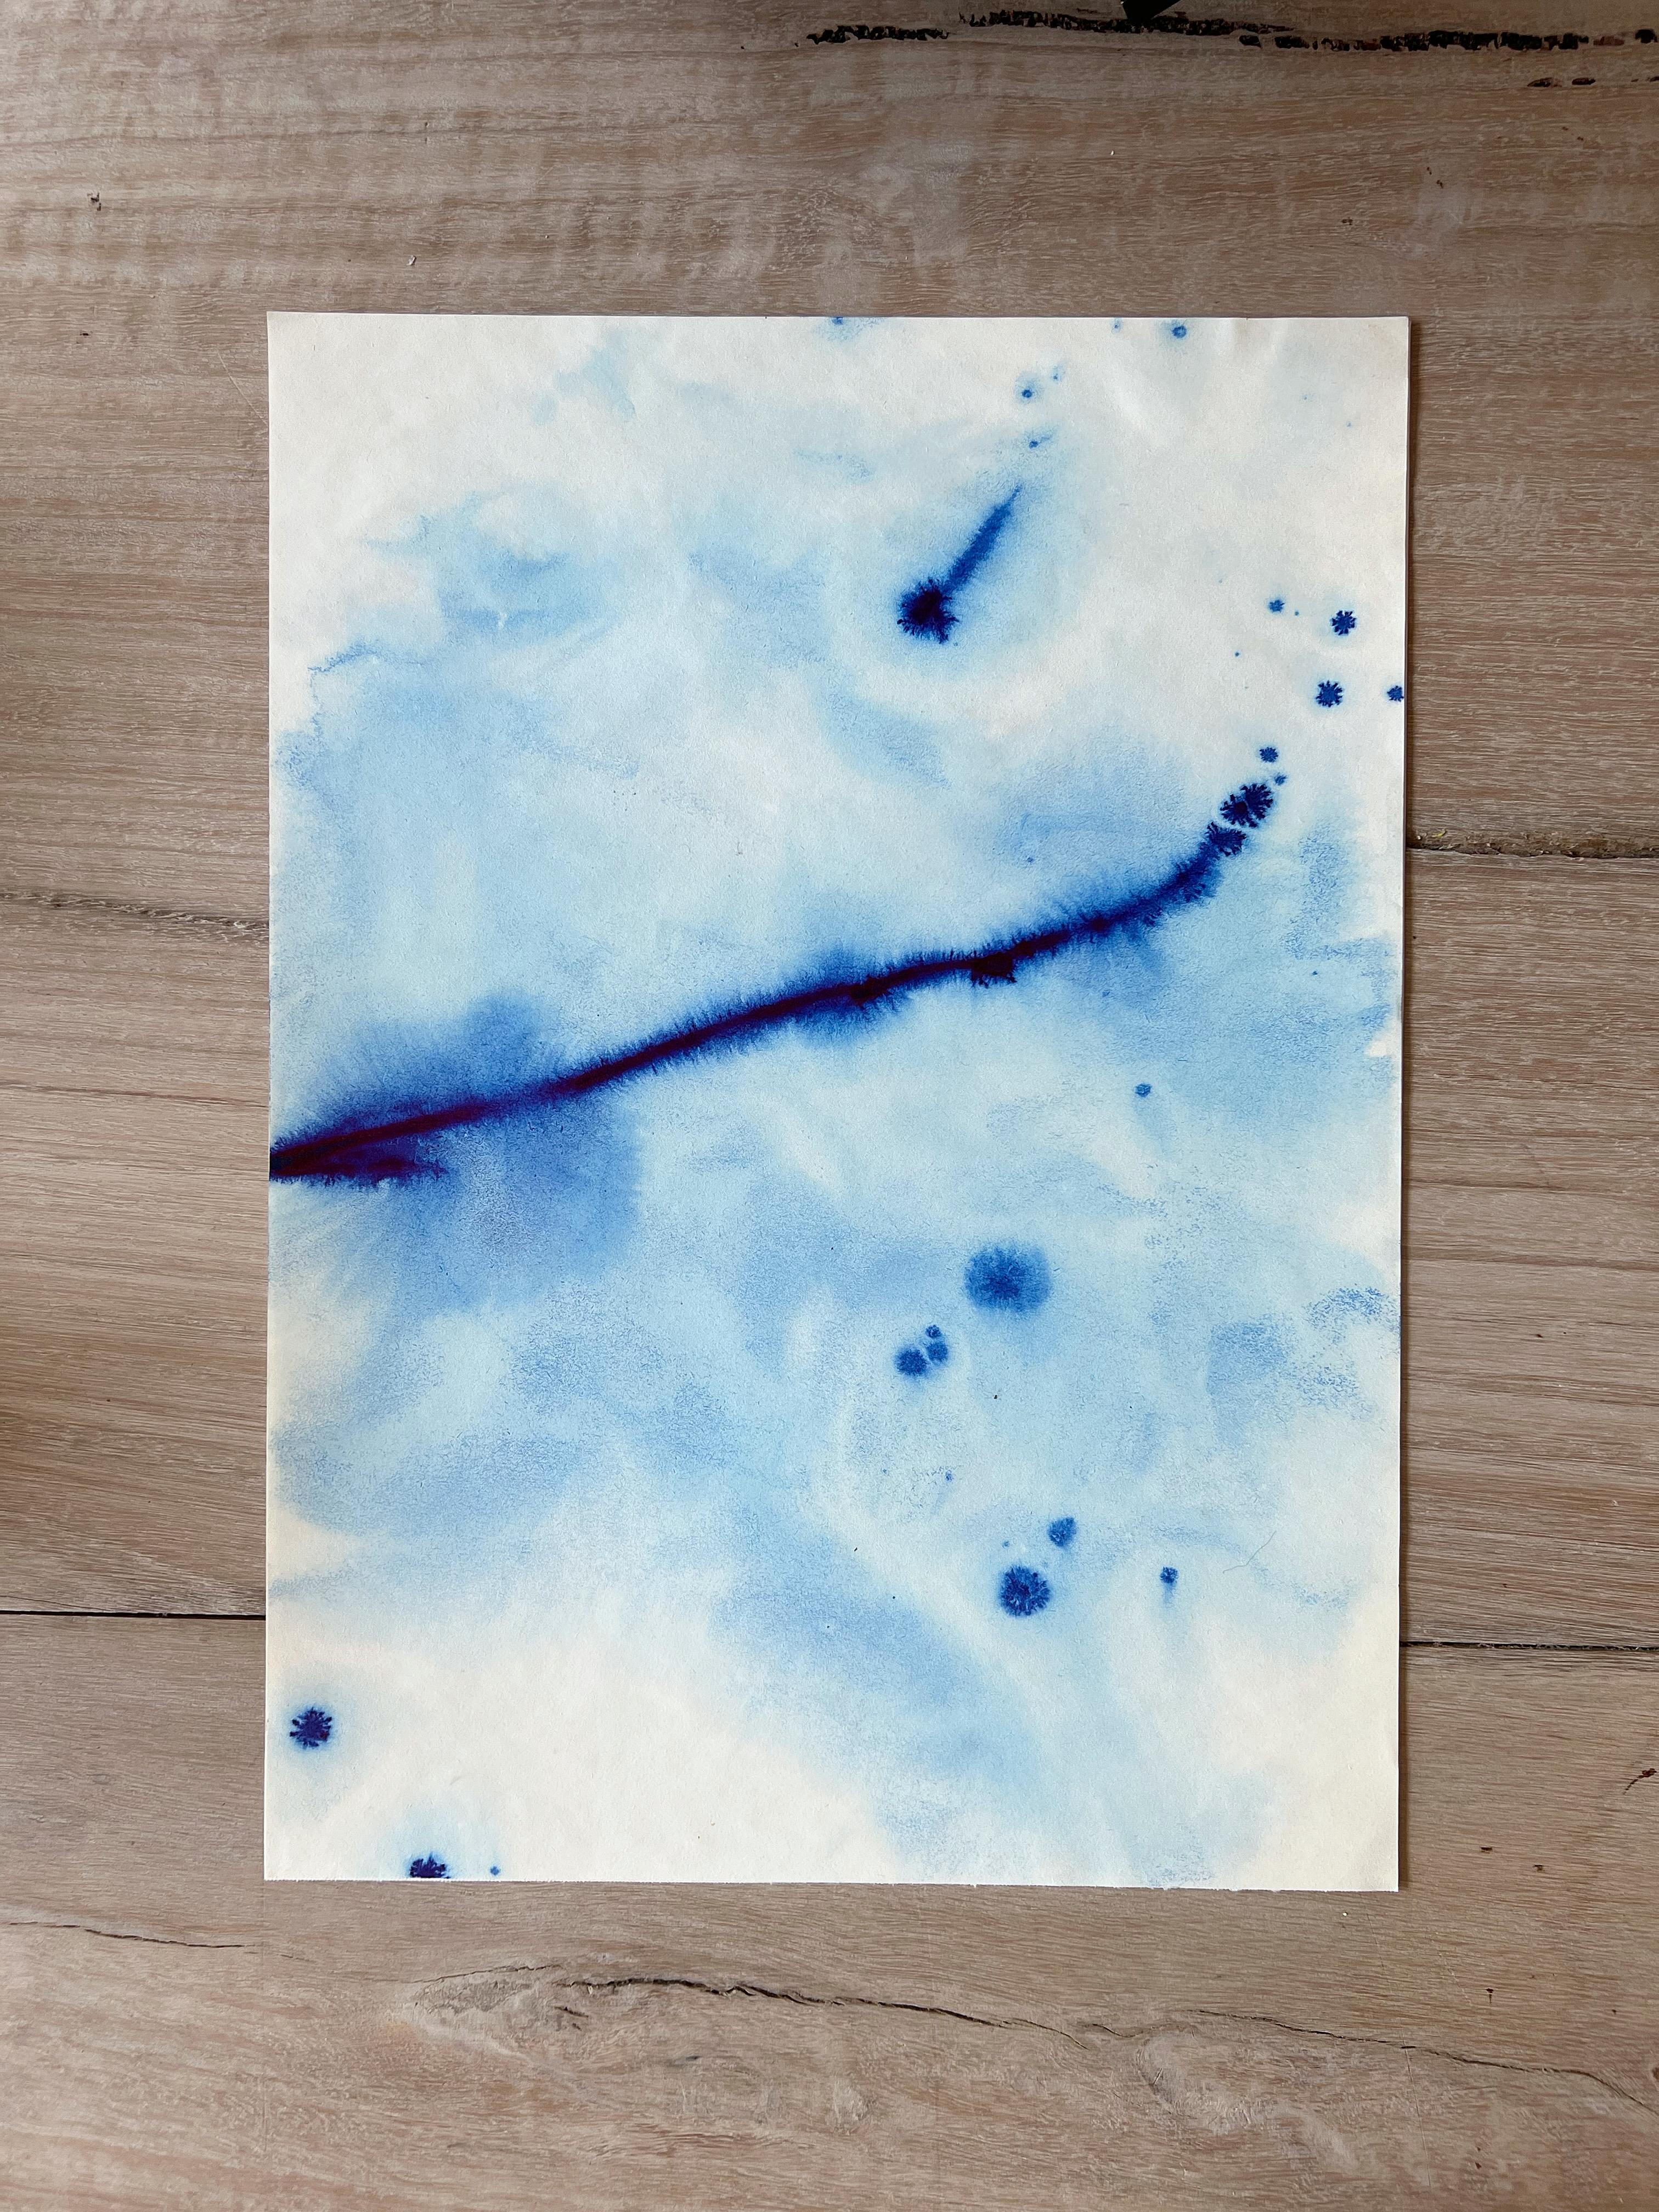 Waves de mer bleues méditerranéennes, peinture à l'encre faite à la main, Ripples Calming, édition limitée - Bleu Landscape Painting par TUSET